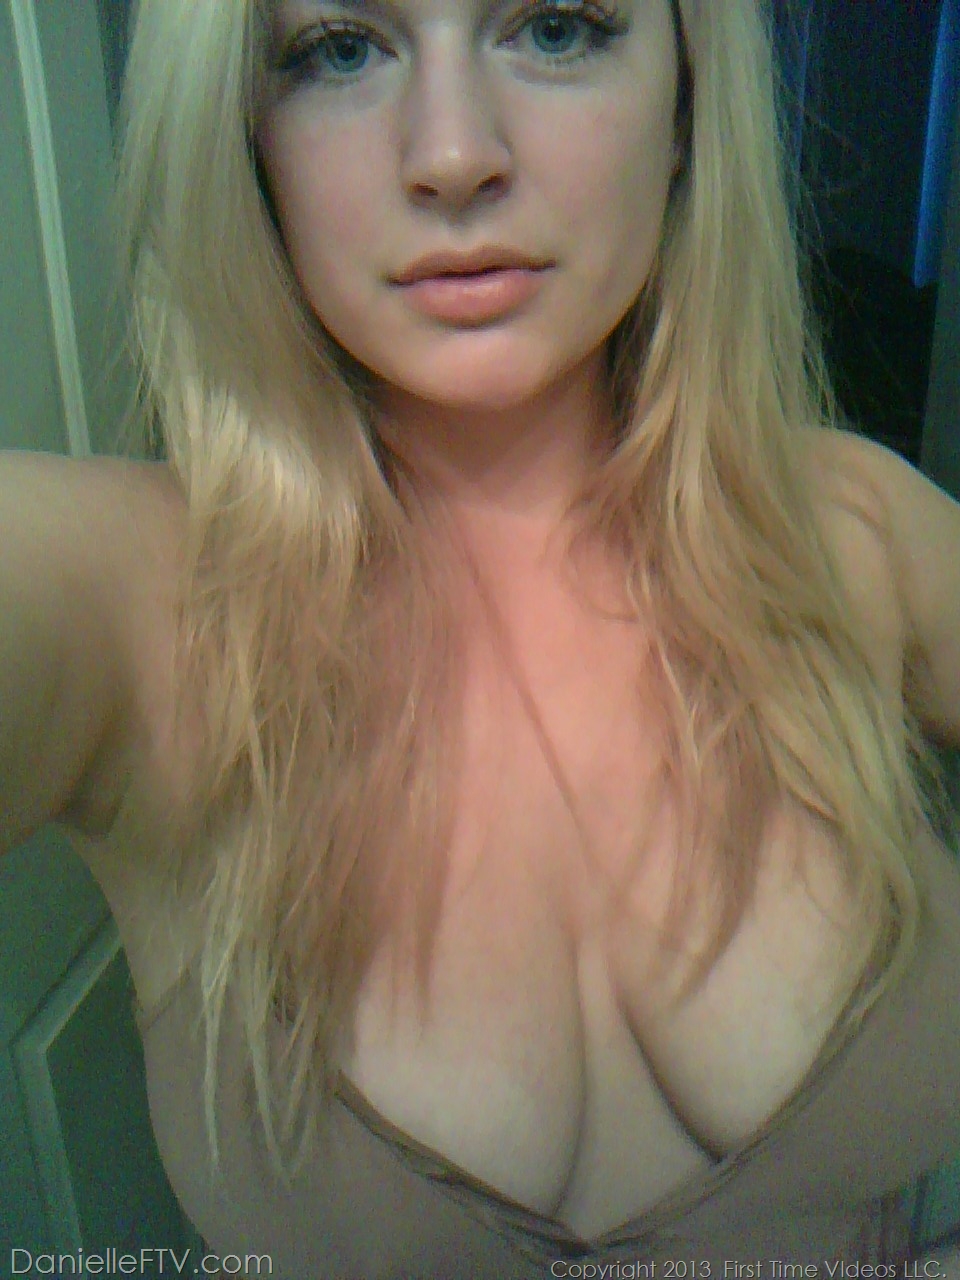 Blonde amateur Danielle Ftv dons numerous outfits for non nude selfies 色情照片 #422634186 | Danielle FTV Pics, Danielle Delaunay, Selfie, 手机色情